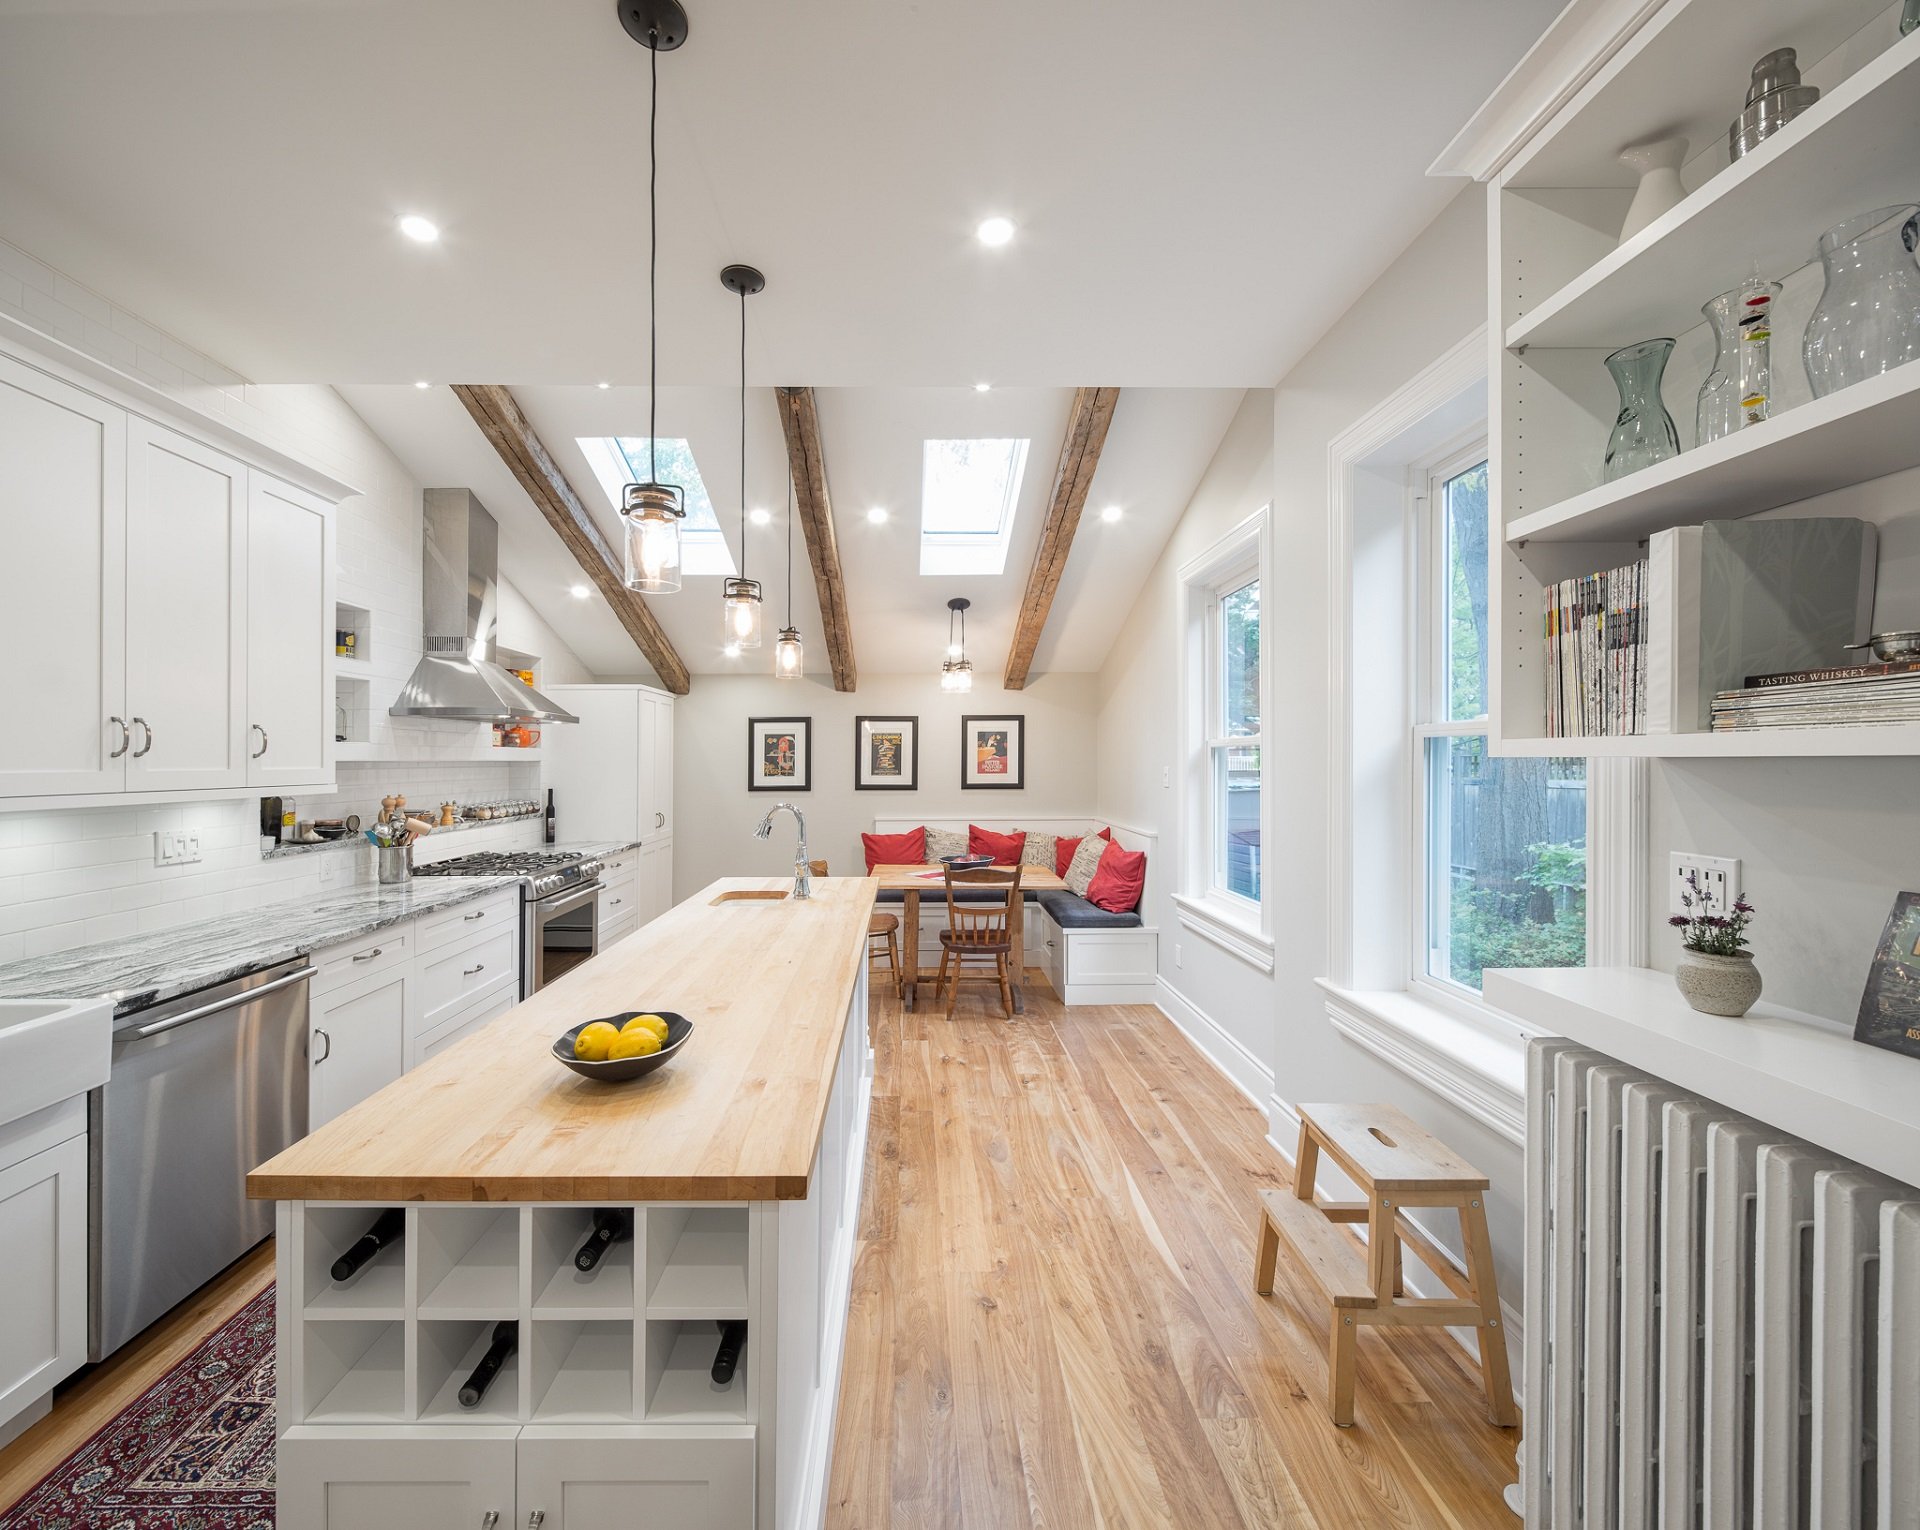 A bright, rustic kitchen design